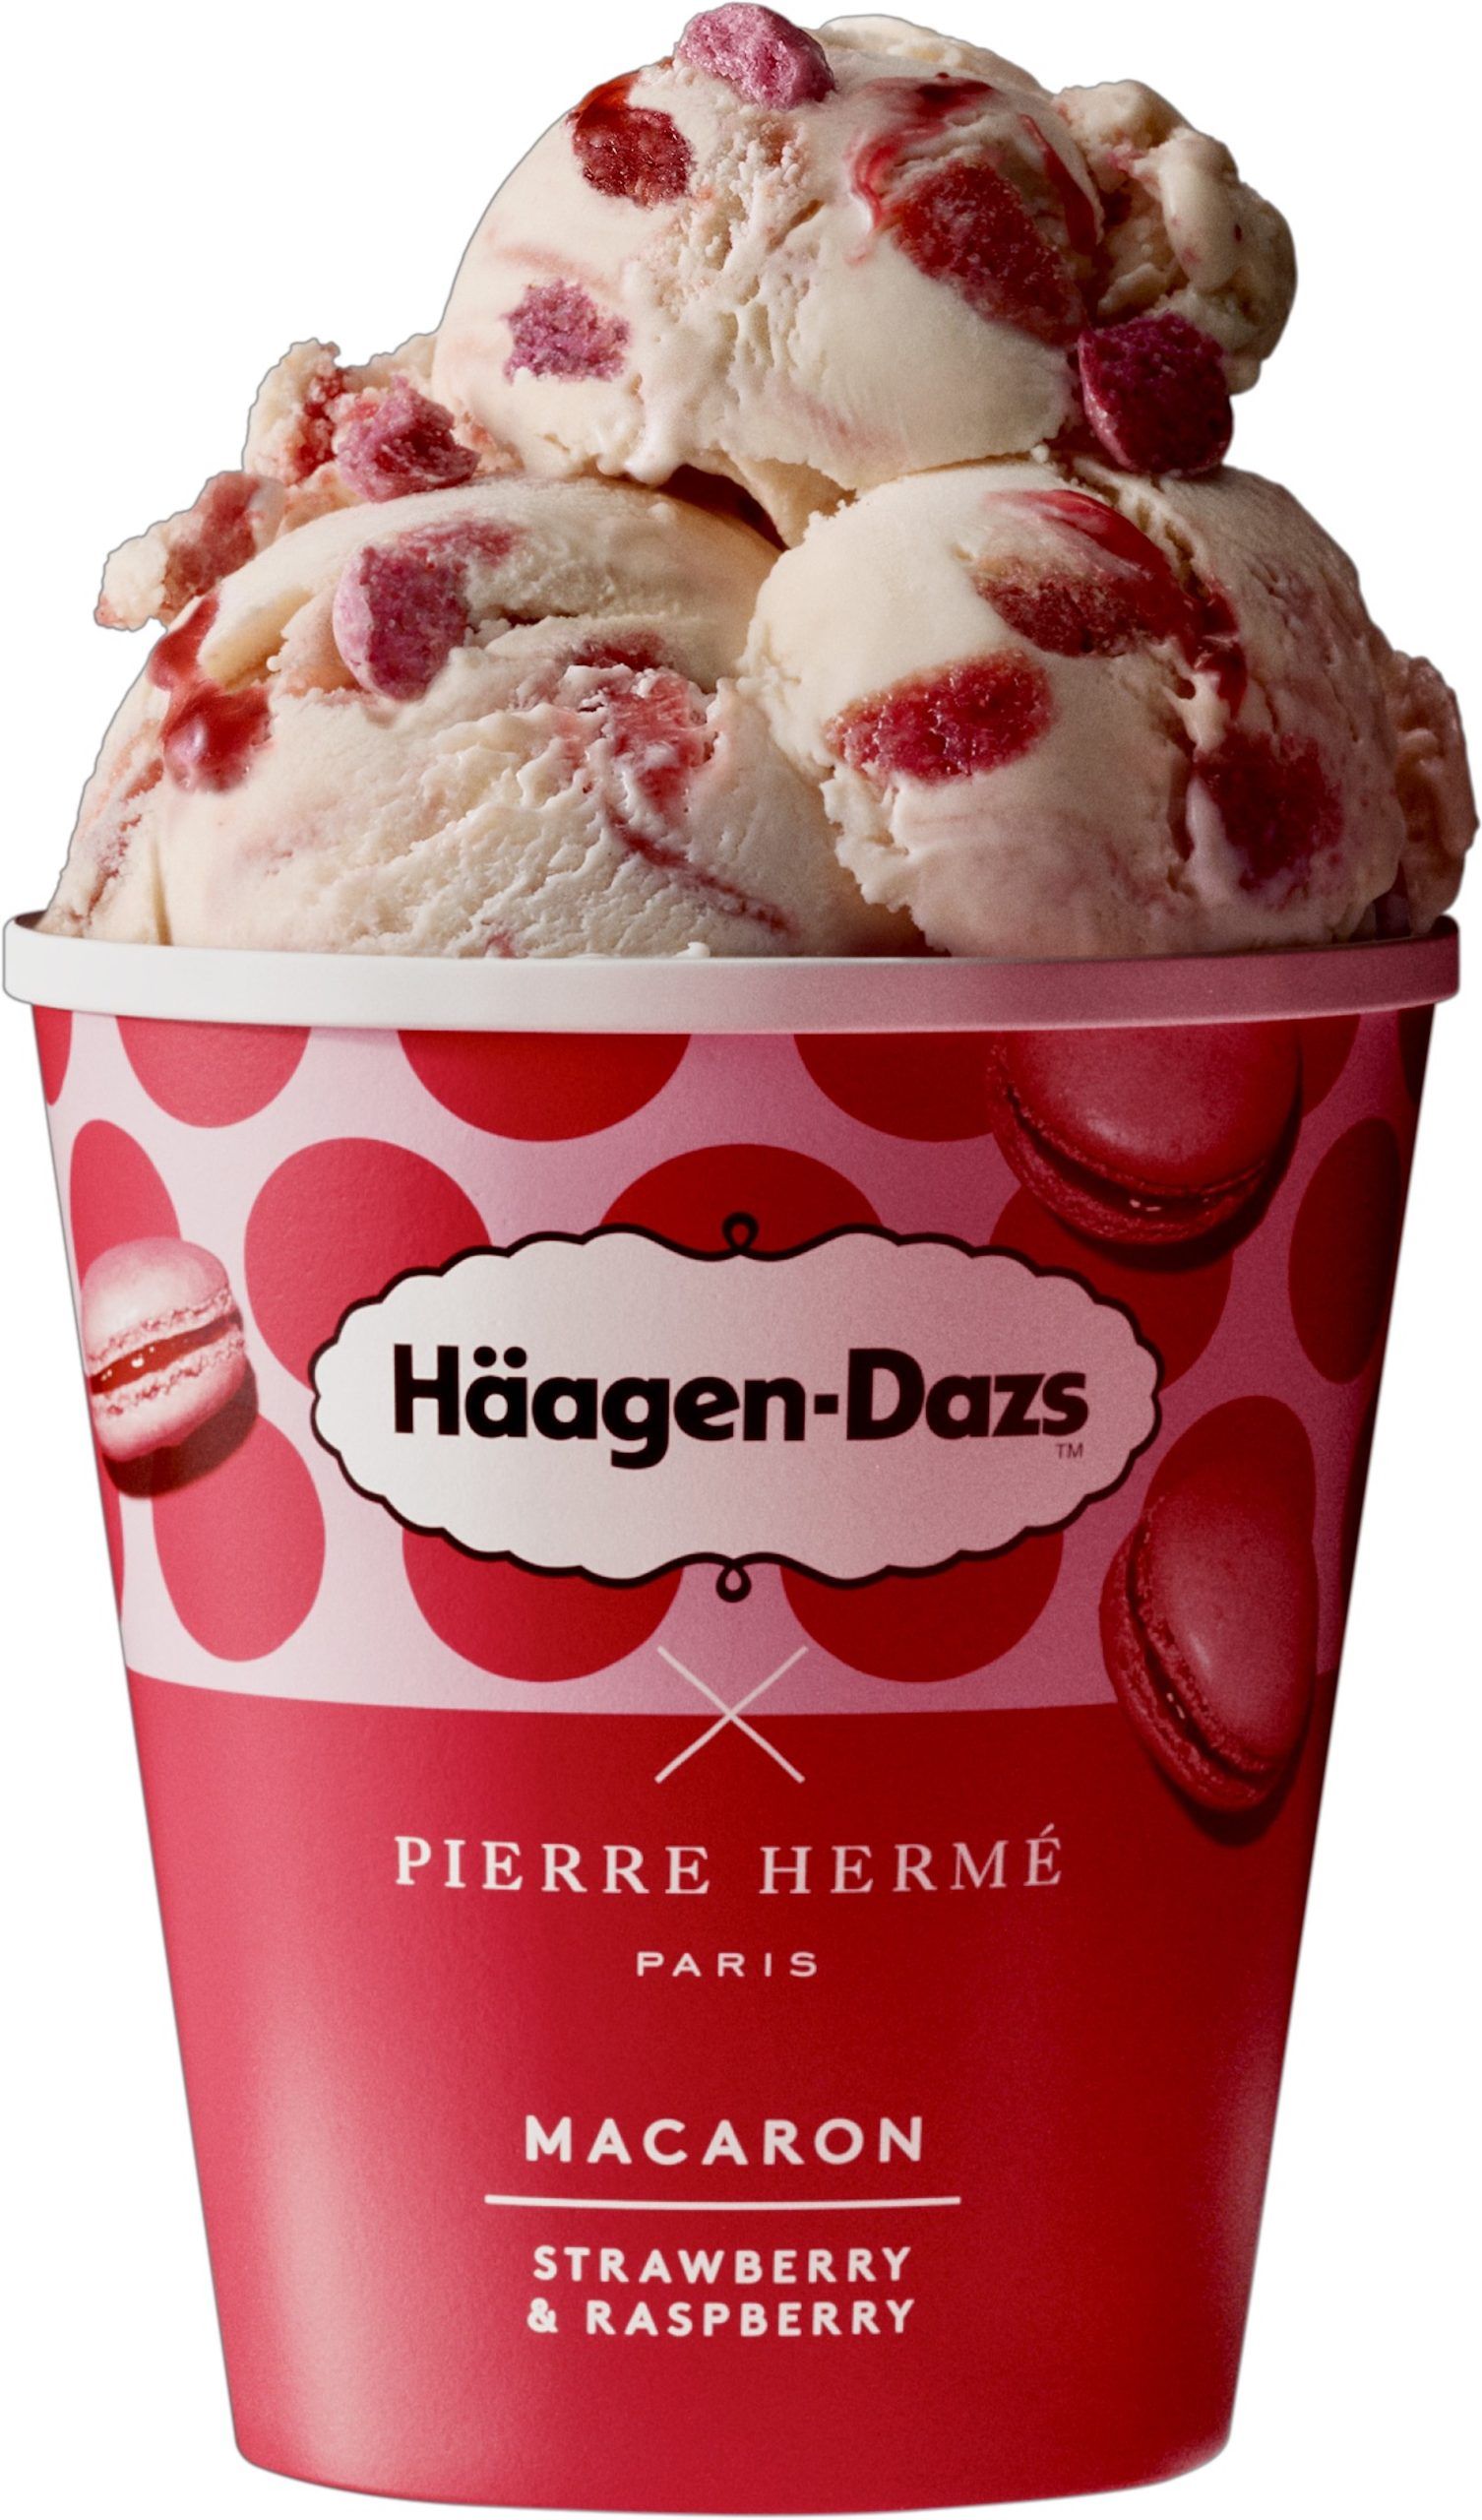 Häagen-Dazs and Pierre Hermé Introduce Macaron Ice Cream